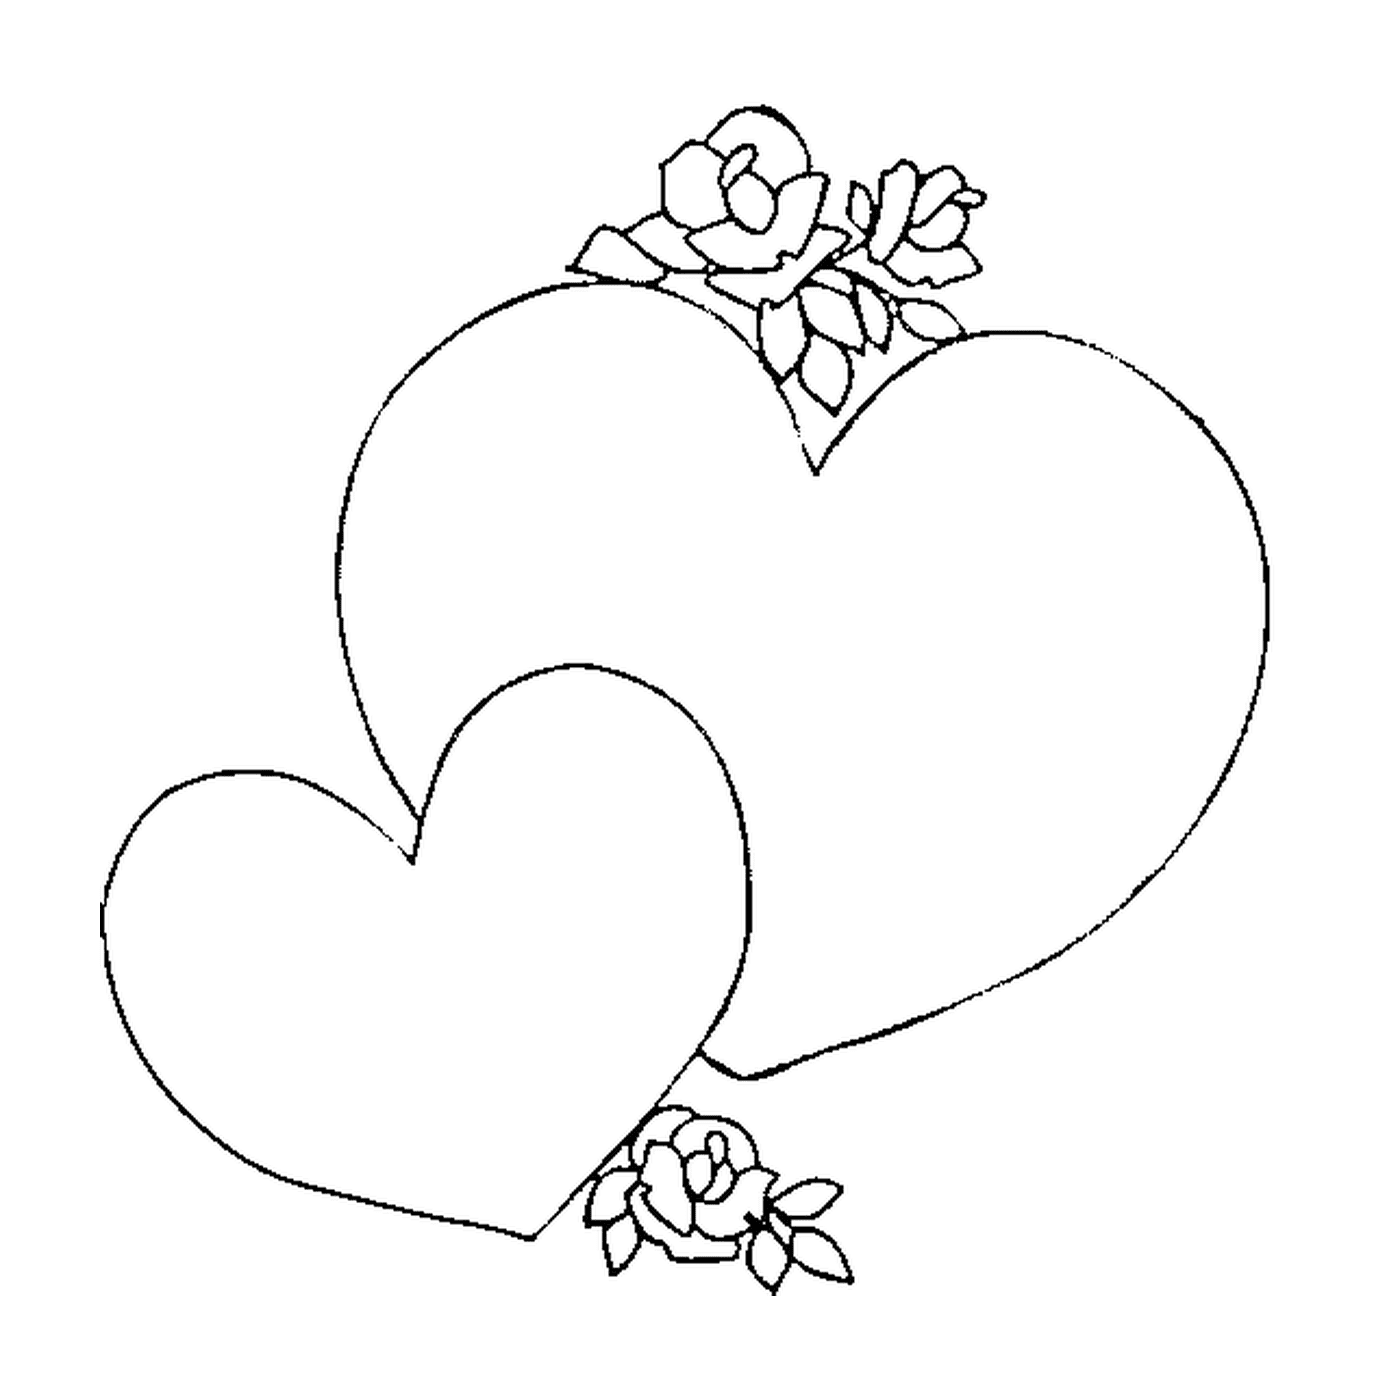  Dois corações com rosas empilhadas 